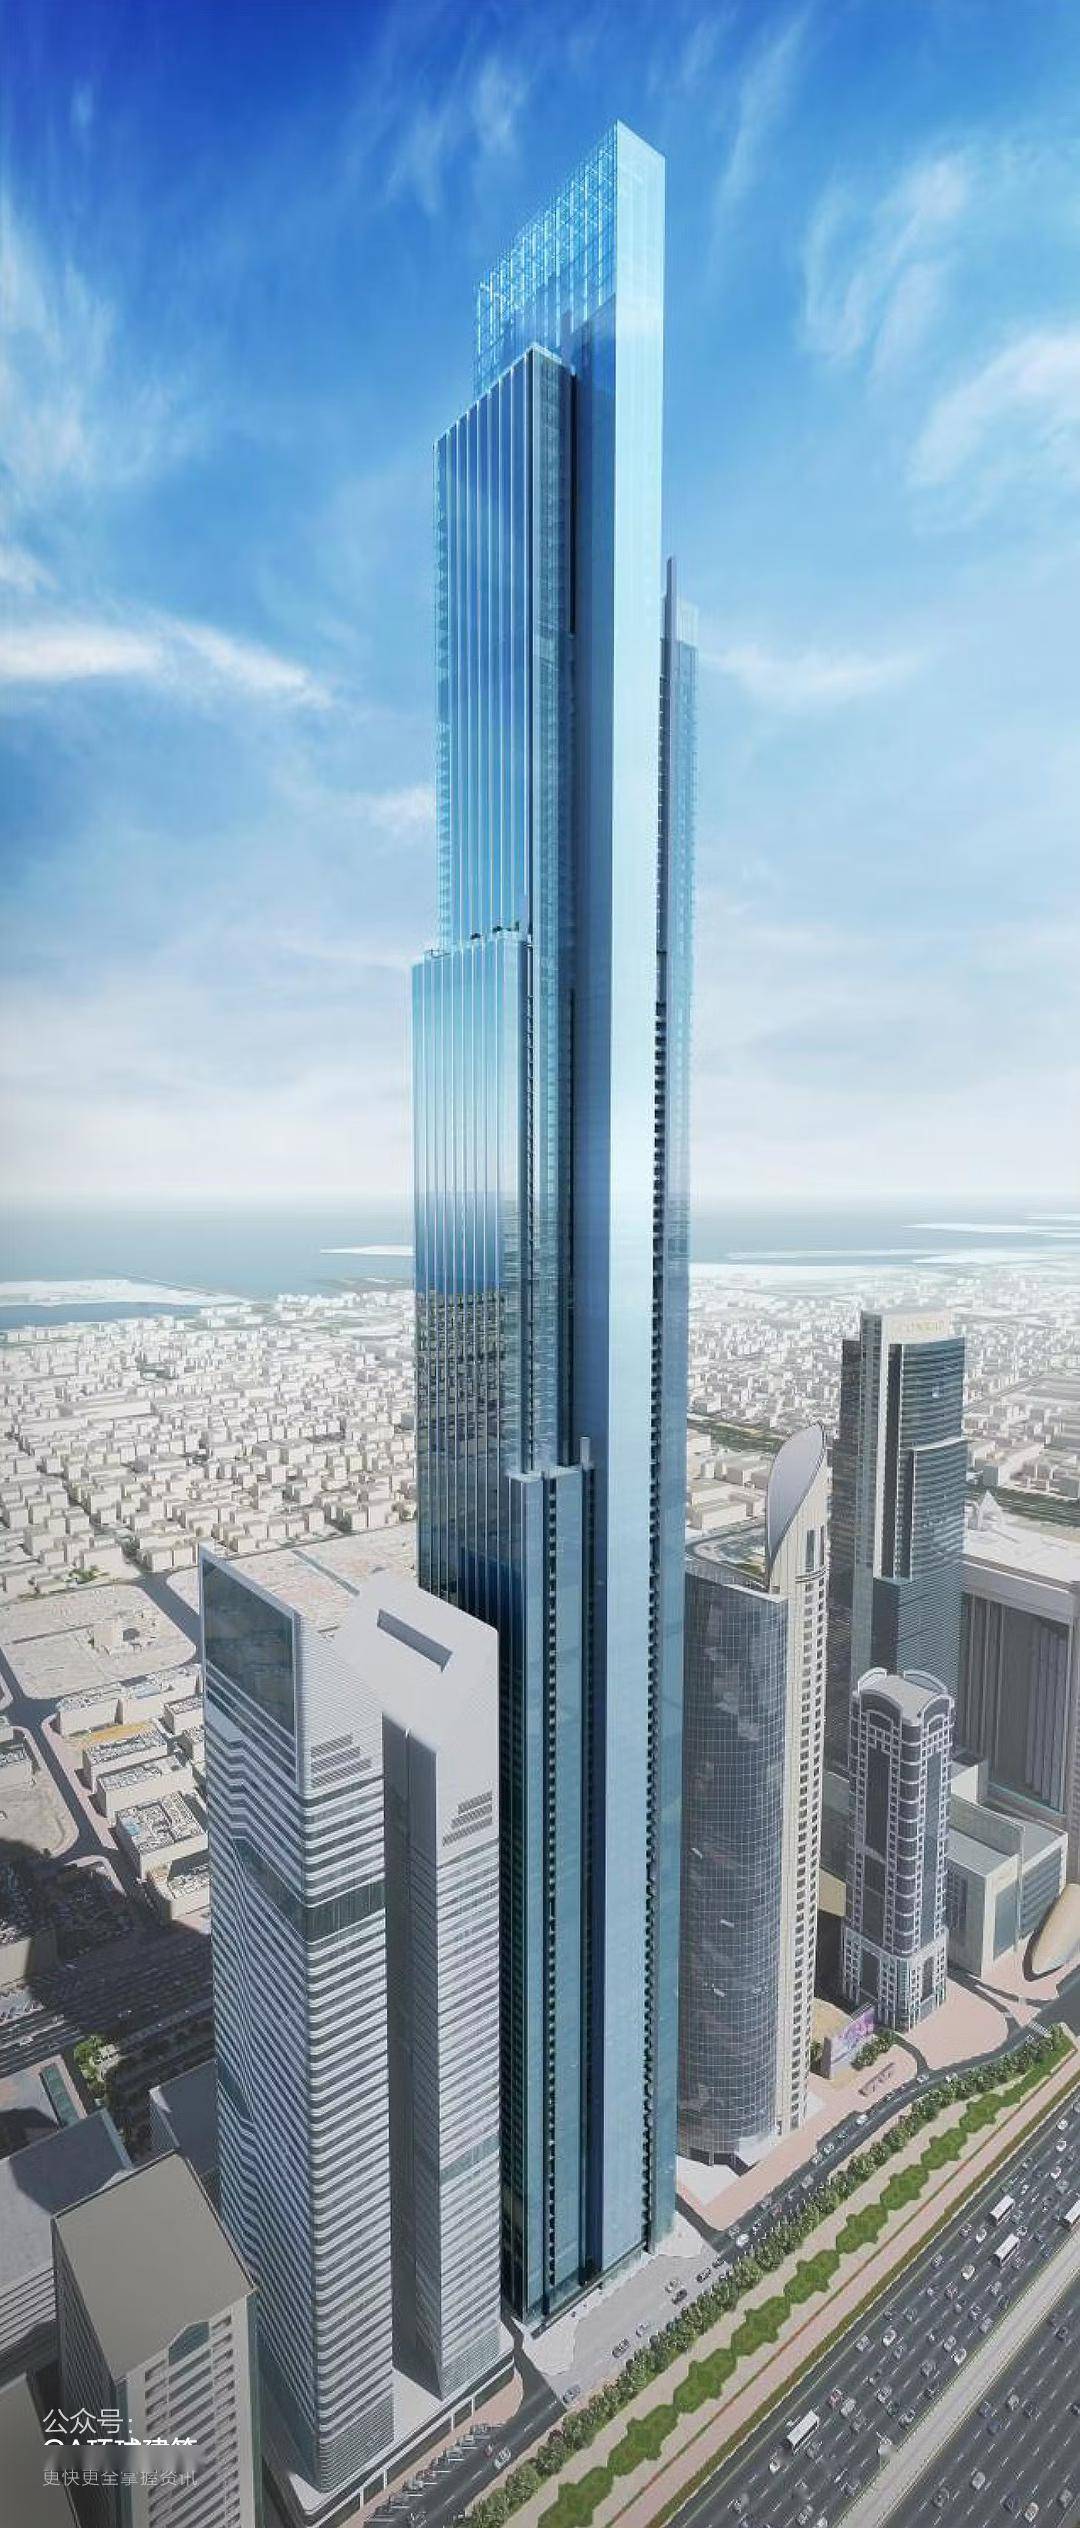 迪拜将建世界第二高塔,共122层